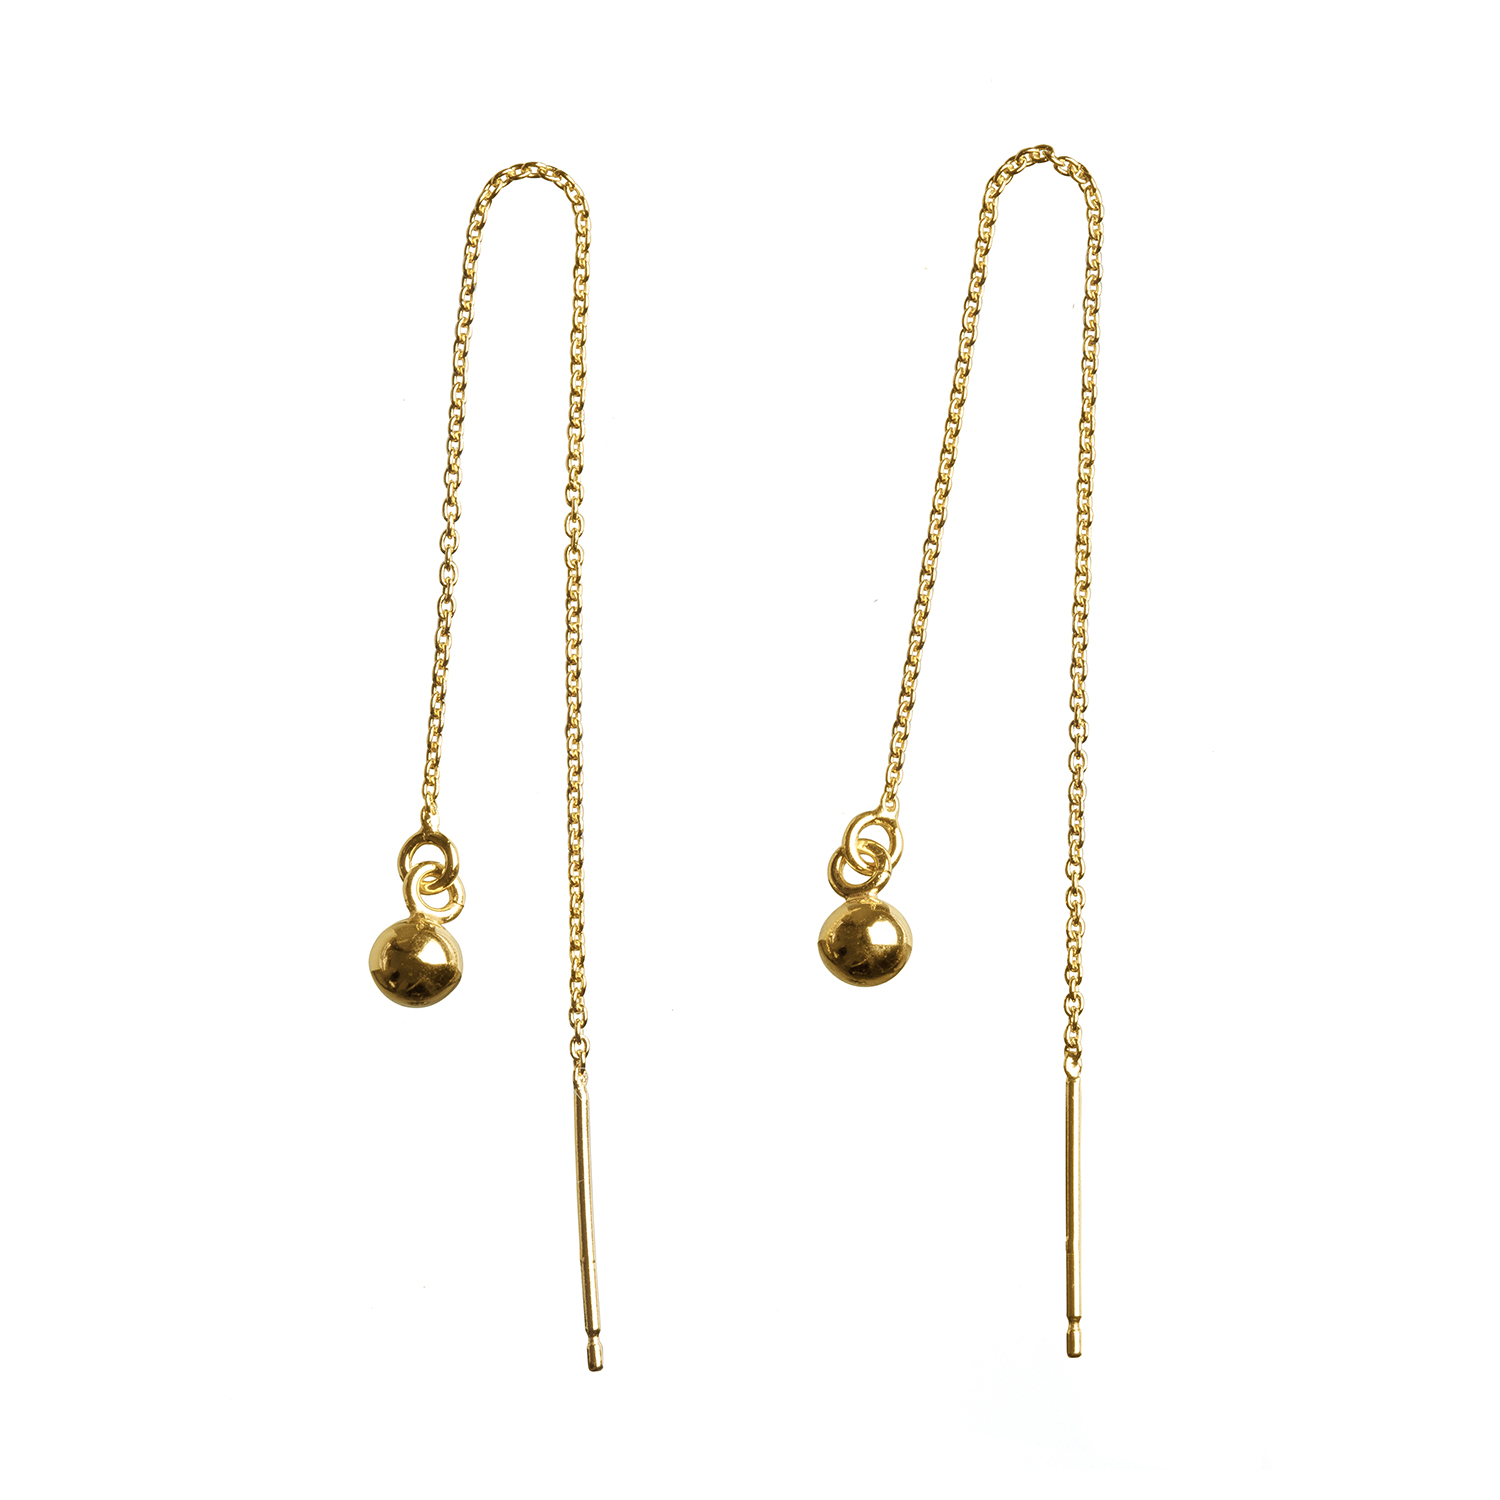 metaformi-sperky-gold-ball-chain-earring